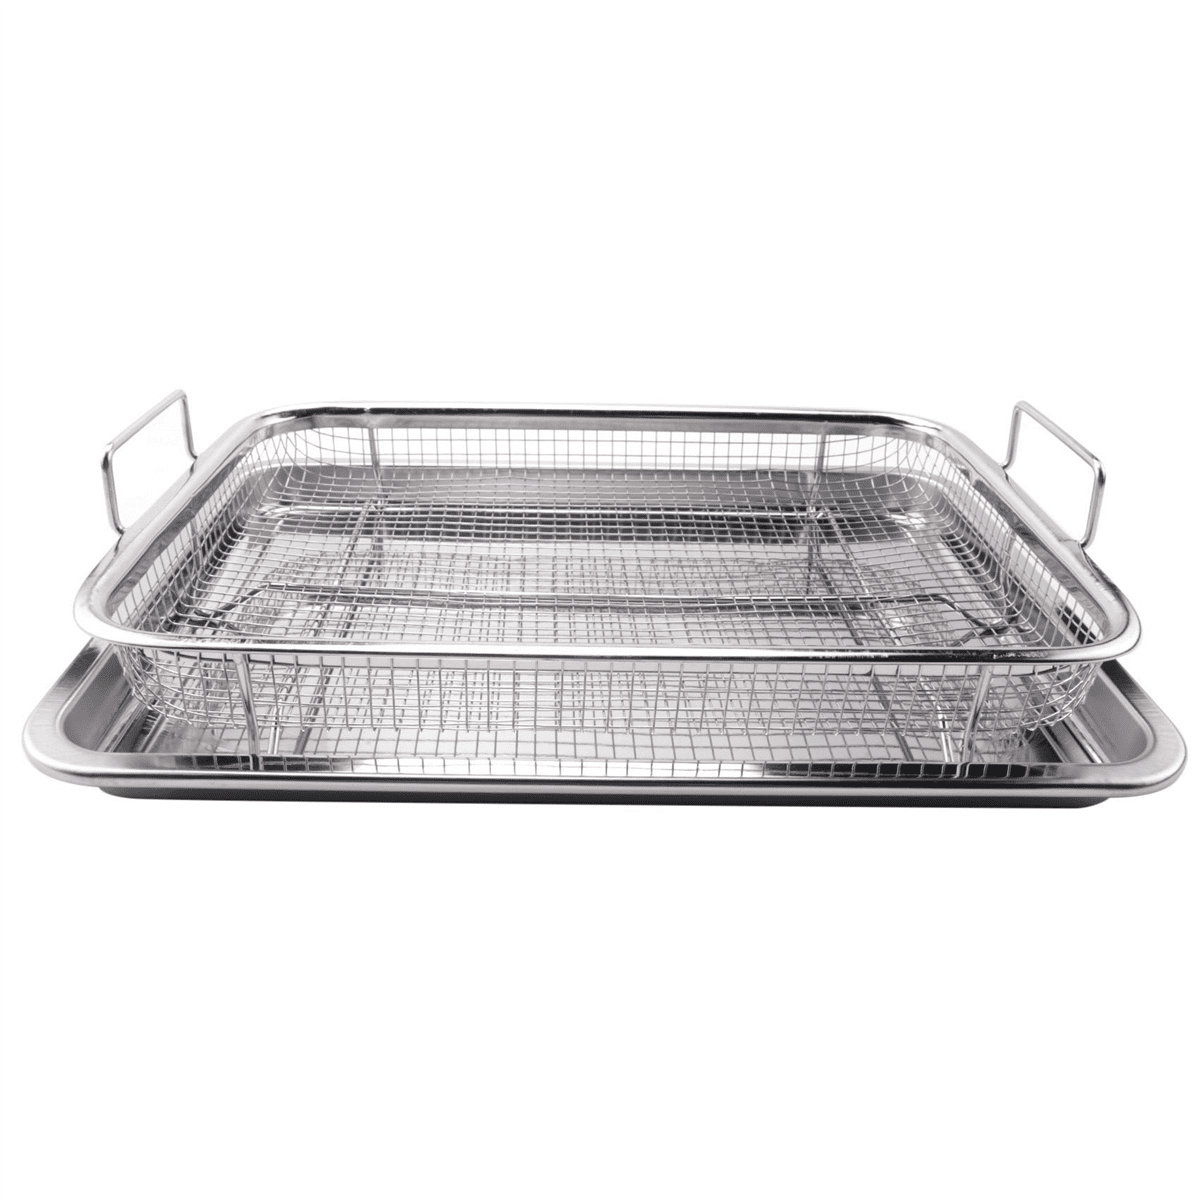  Gotham Steel Air Fryer Basket for Oven, 2 Piece Nonstick Air  Fryer Tray + Basket, Copper Crisper Tray, Air Fryer Pan for Oven Great for  Baking & Crisping Foods, Dishwasher Safe –